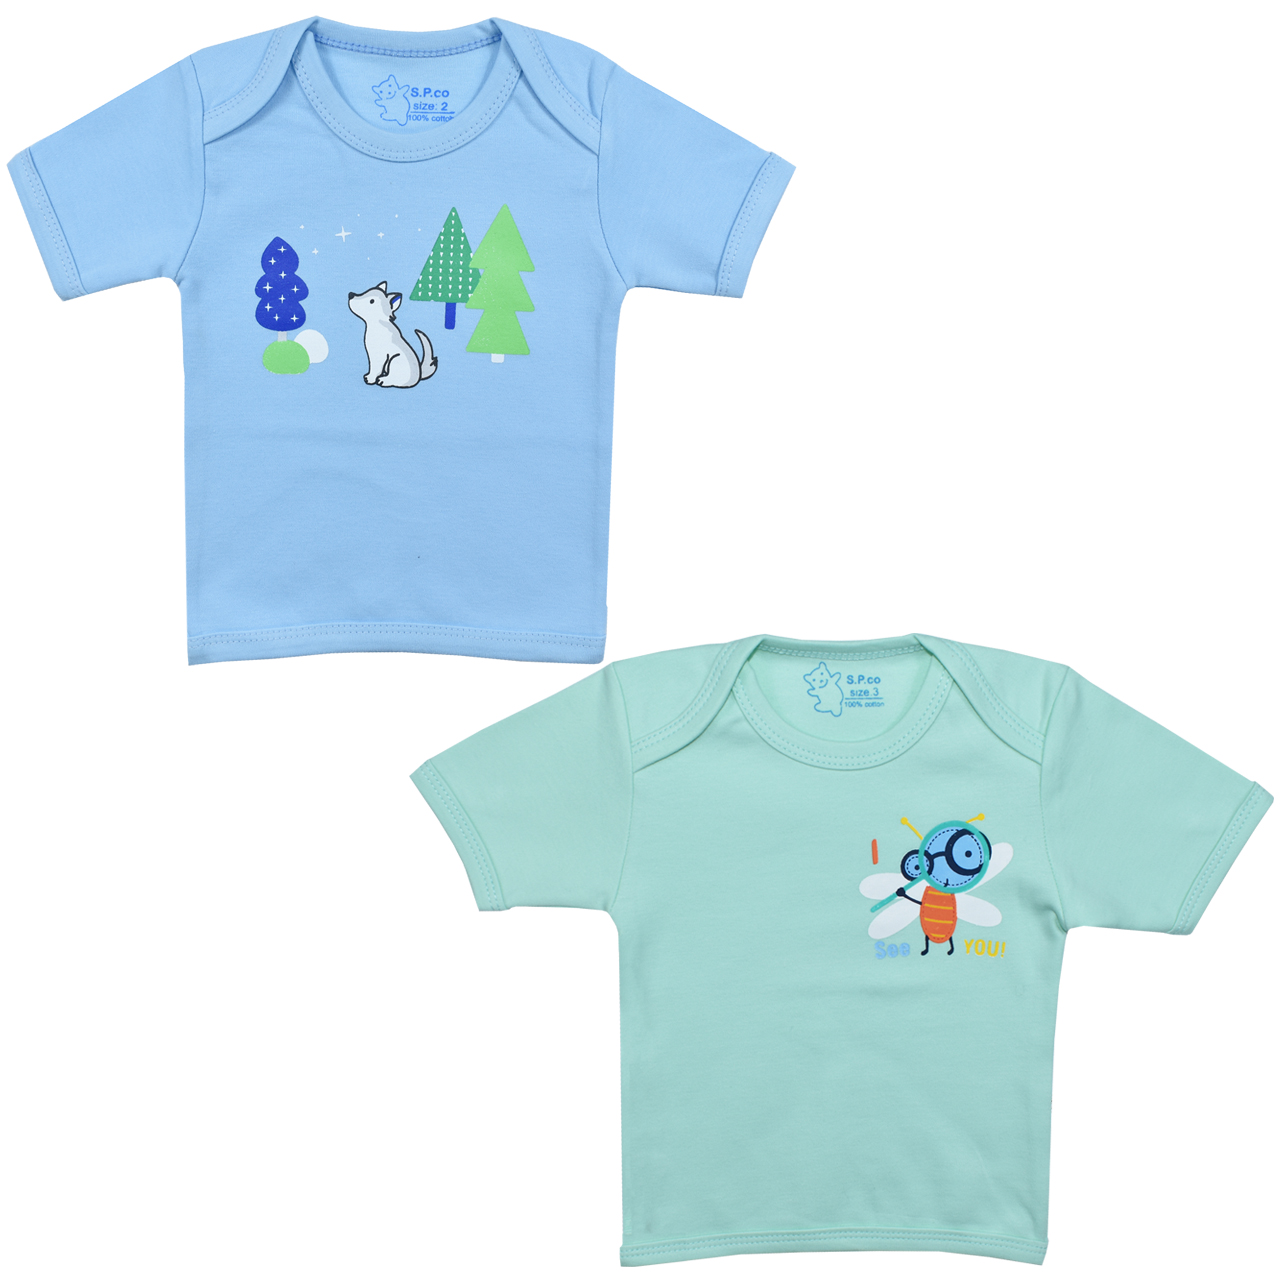 تی شرت آستین کوتاه نوزادی اسپیکو کد 300 -2 بسته دو عددی -  - 1